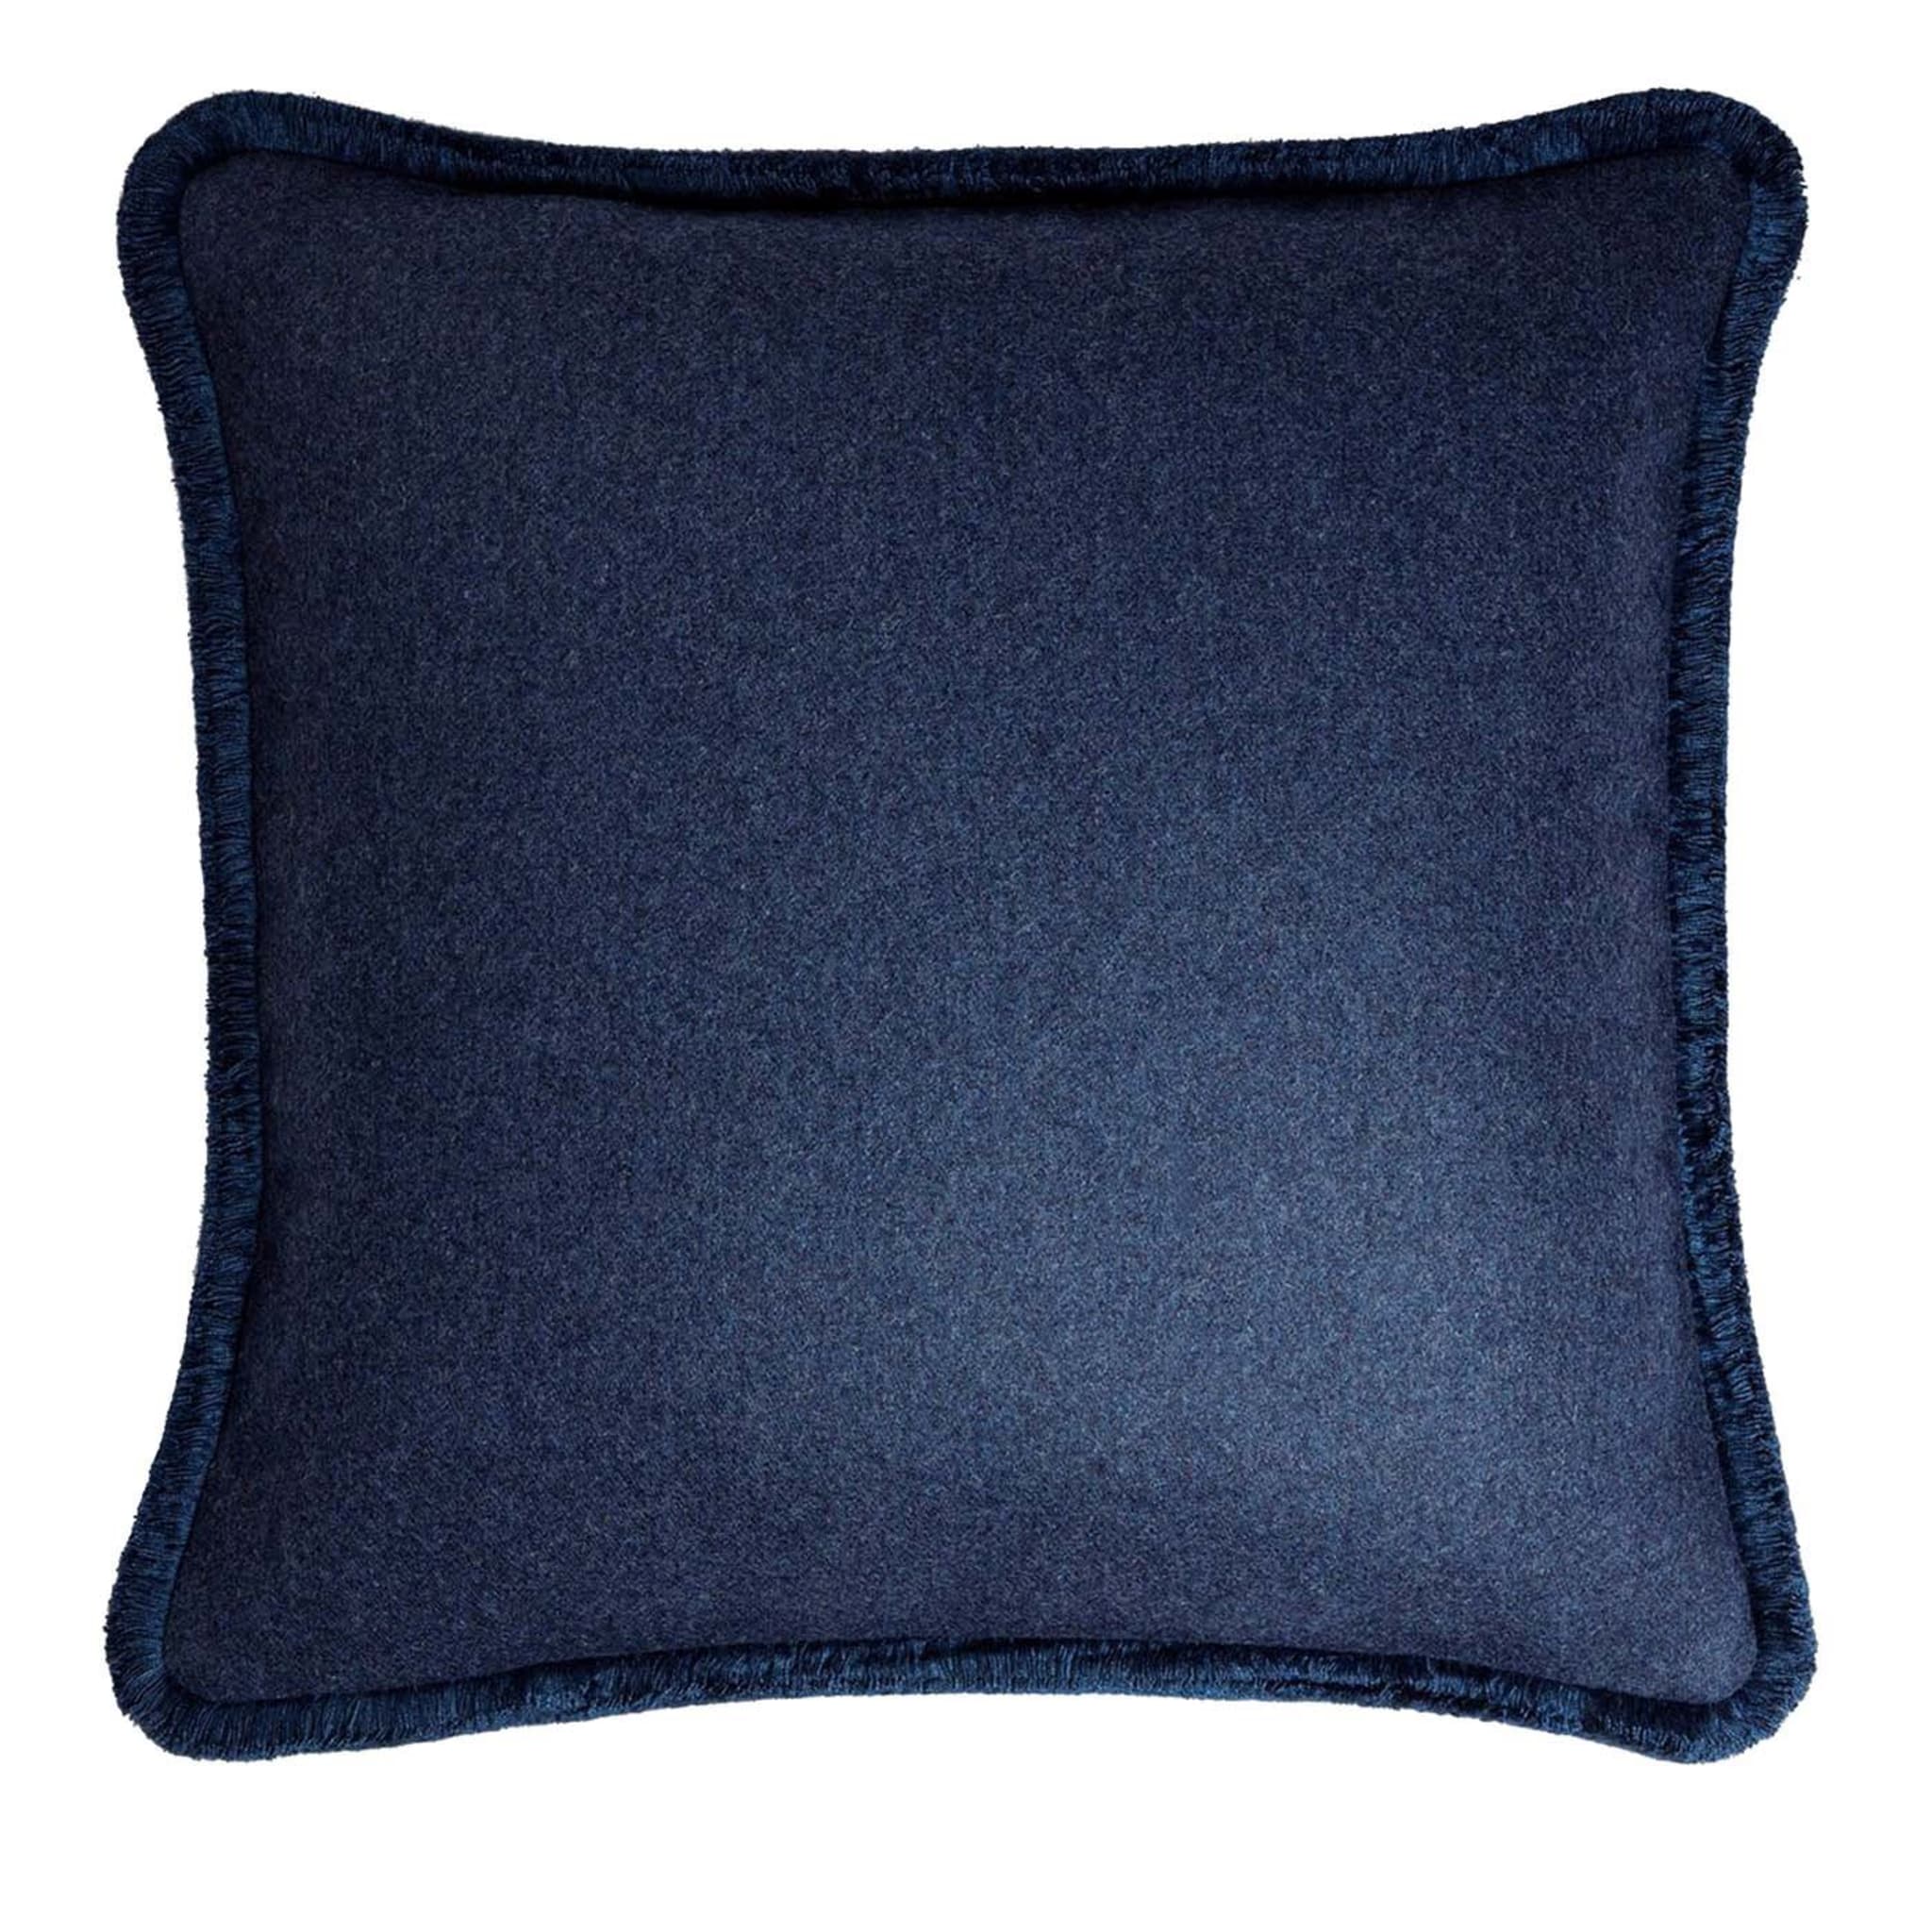 Happy Blue Cushion - Main view